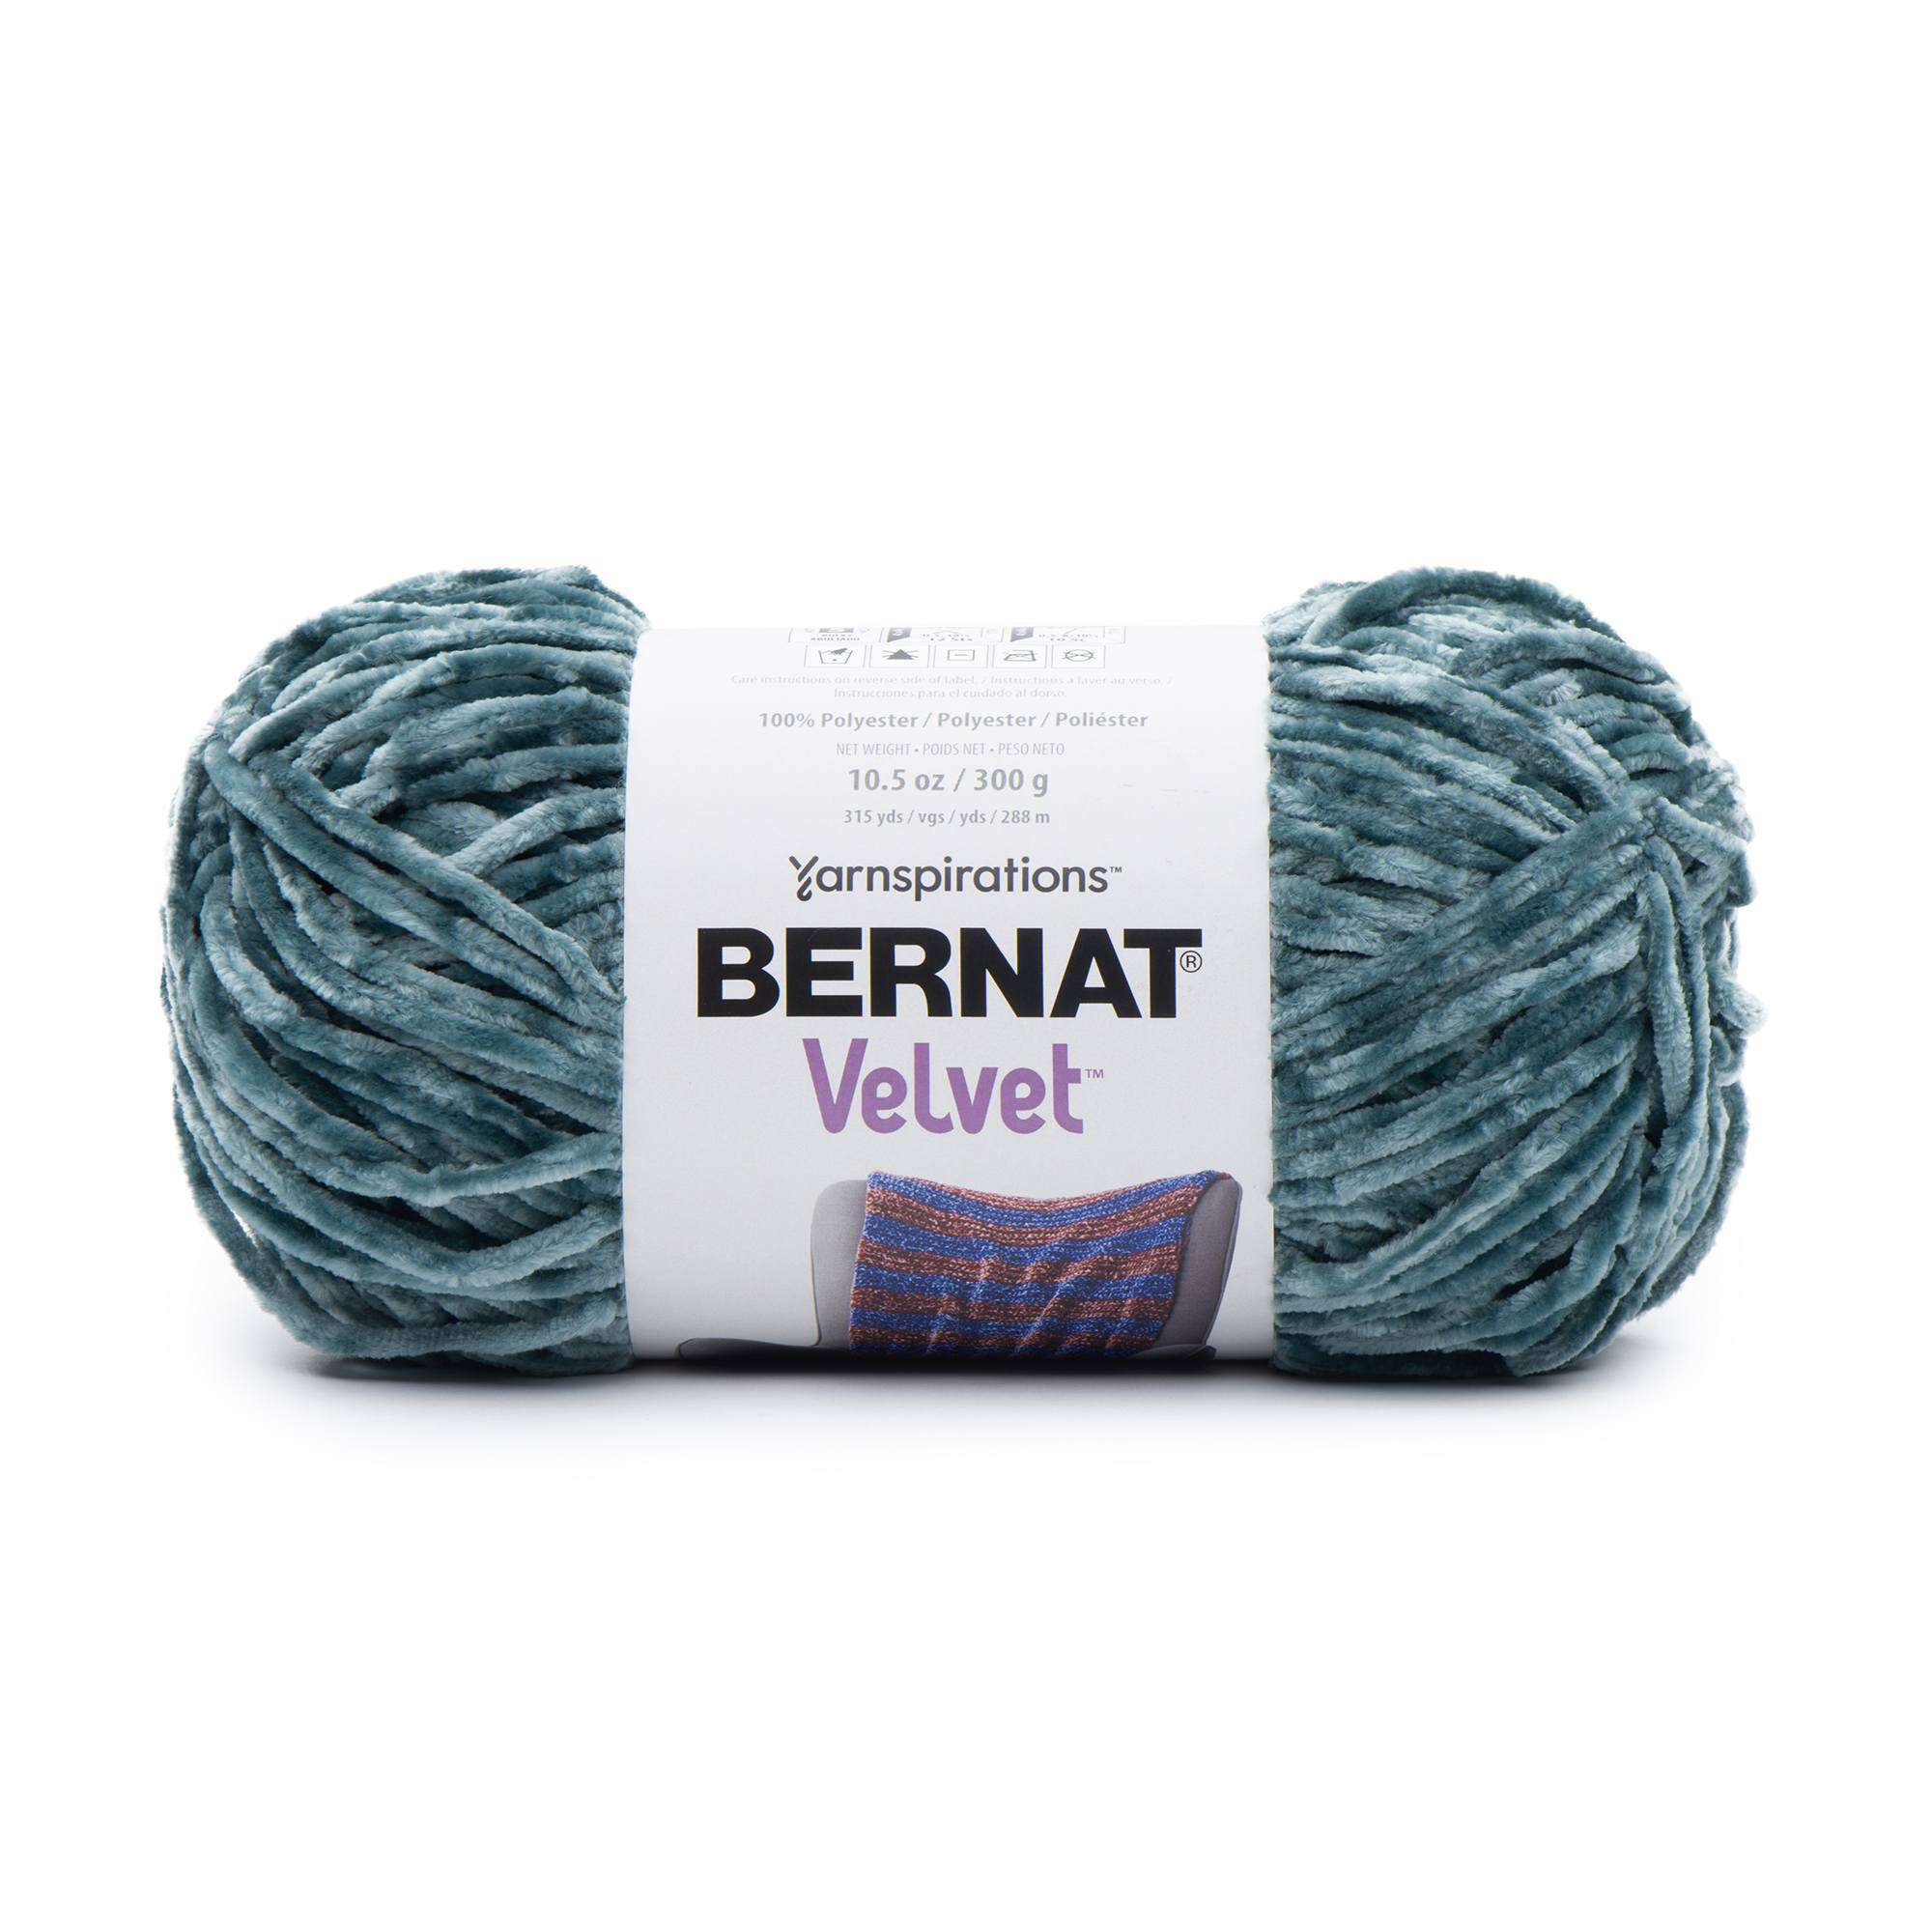 Bernat Velvet Yarn - Mushroom